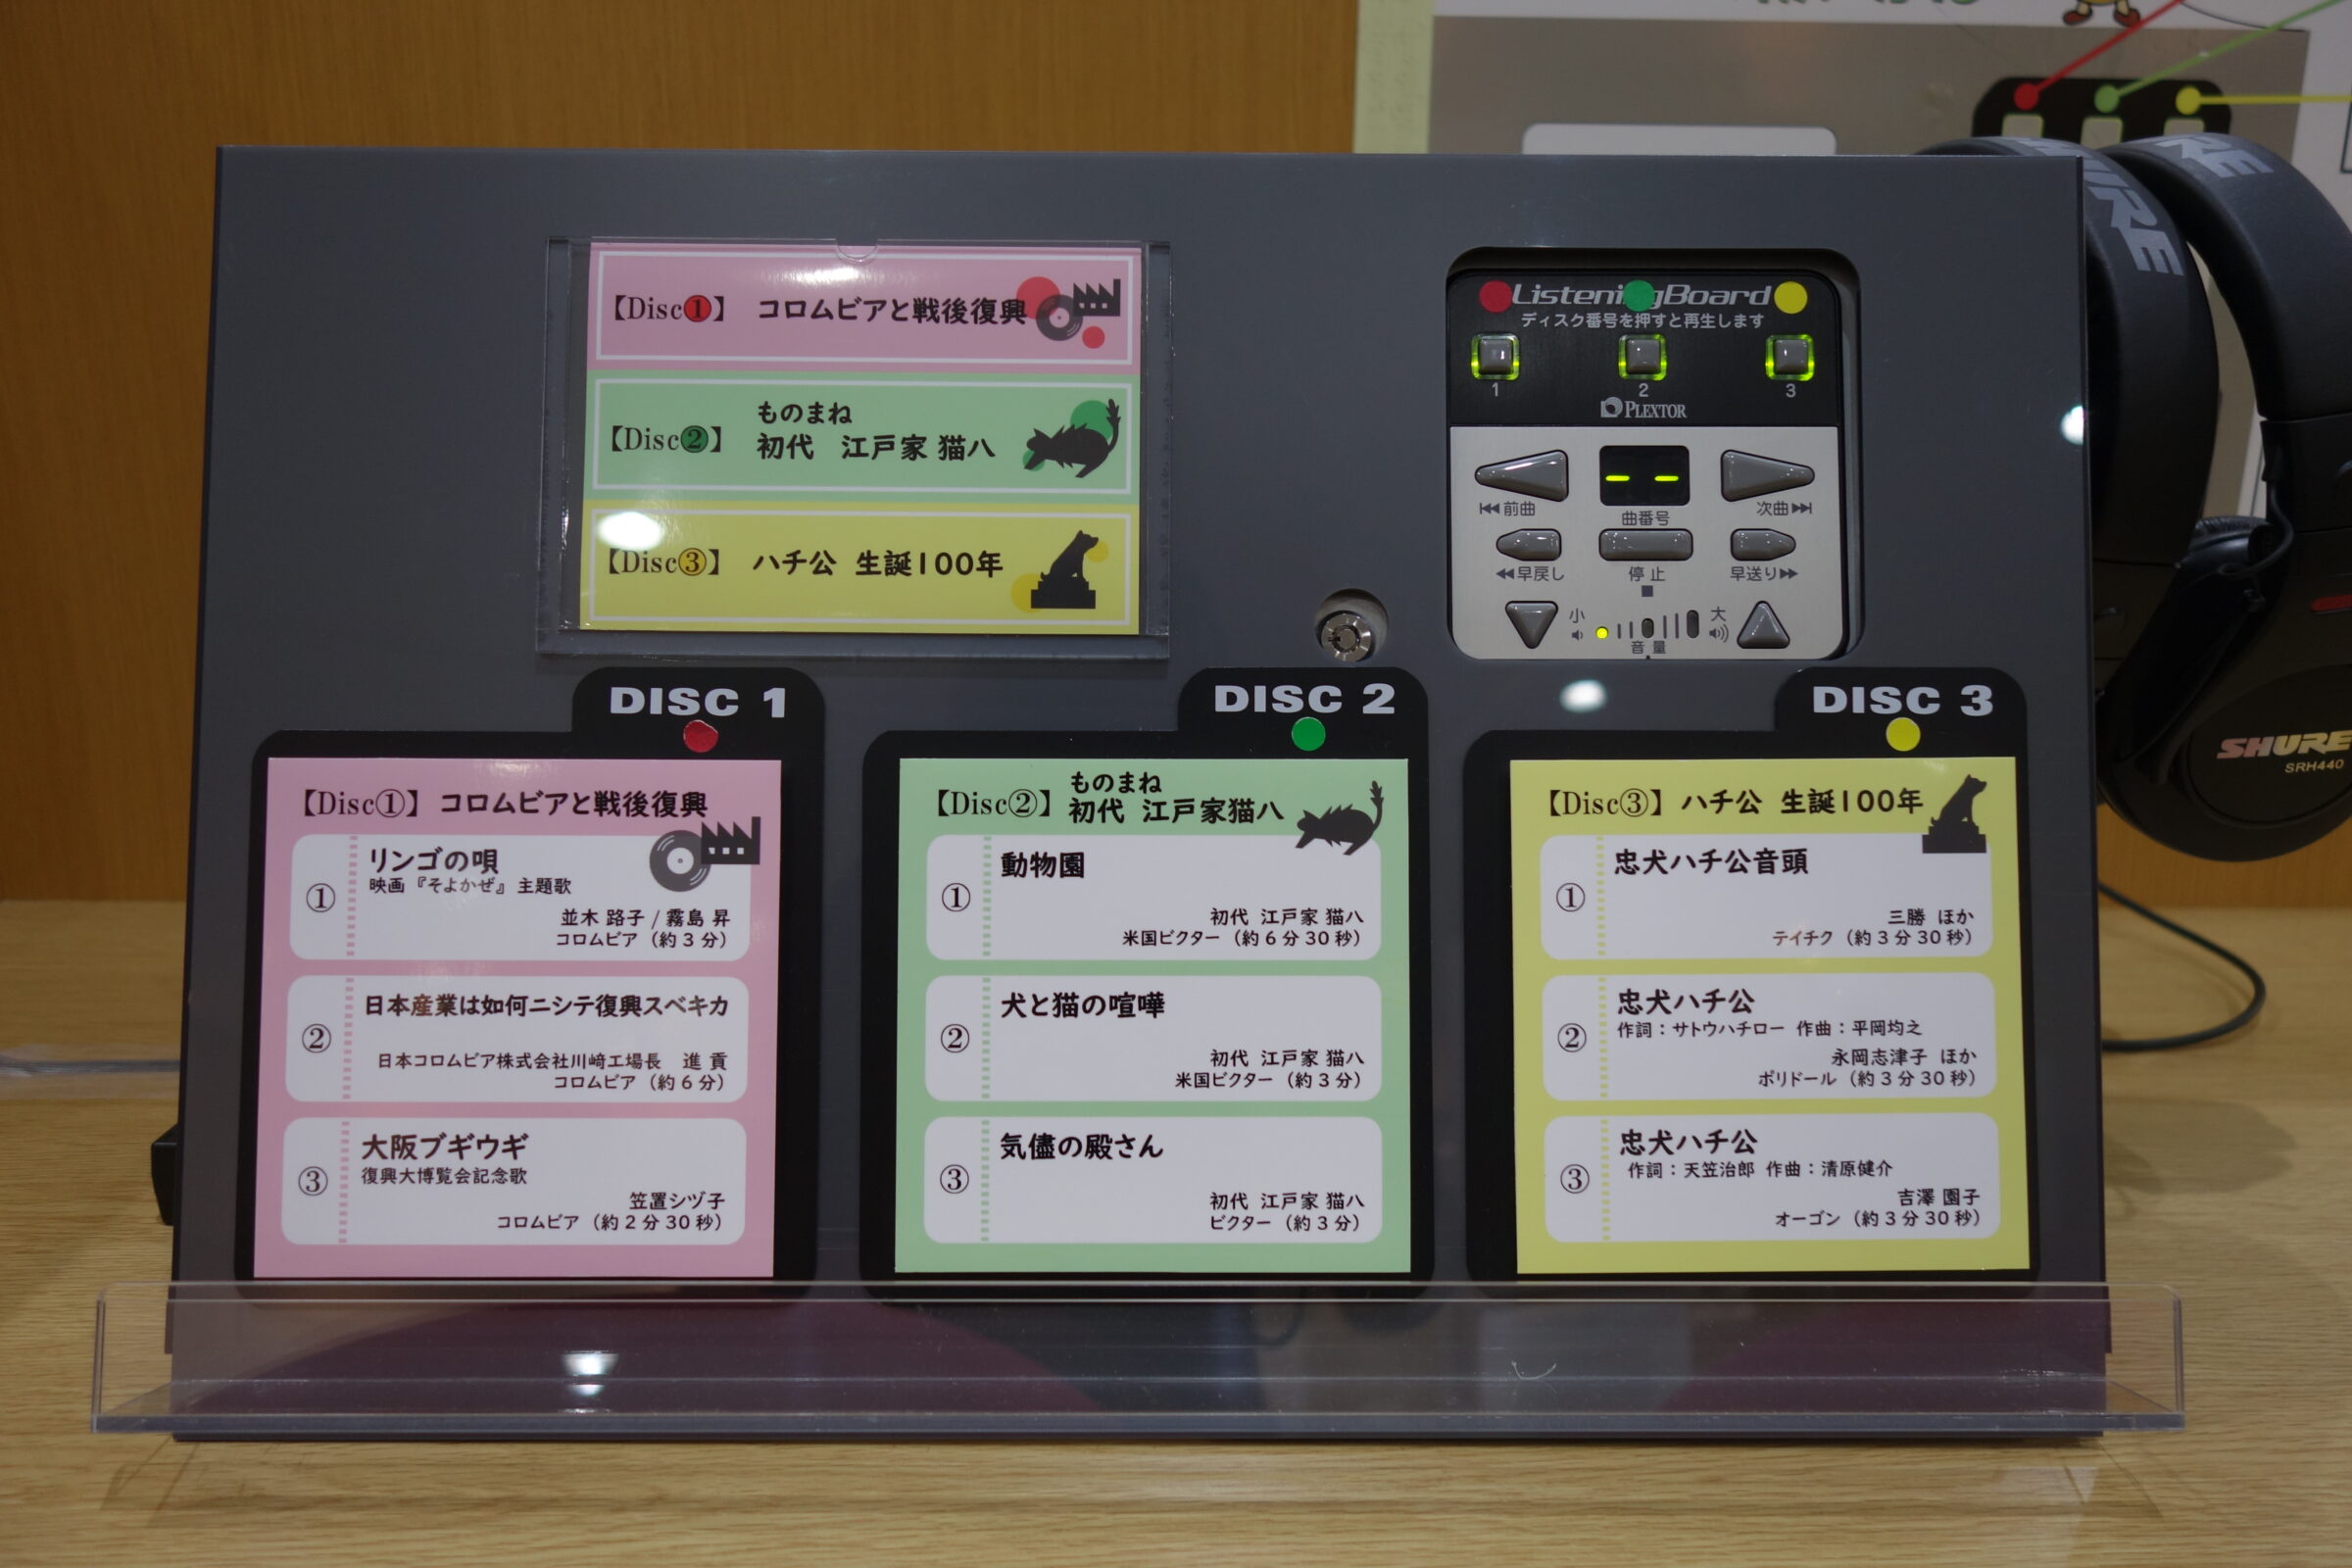 昭和館 5階映像・音響室に設置している試聴機の画像